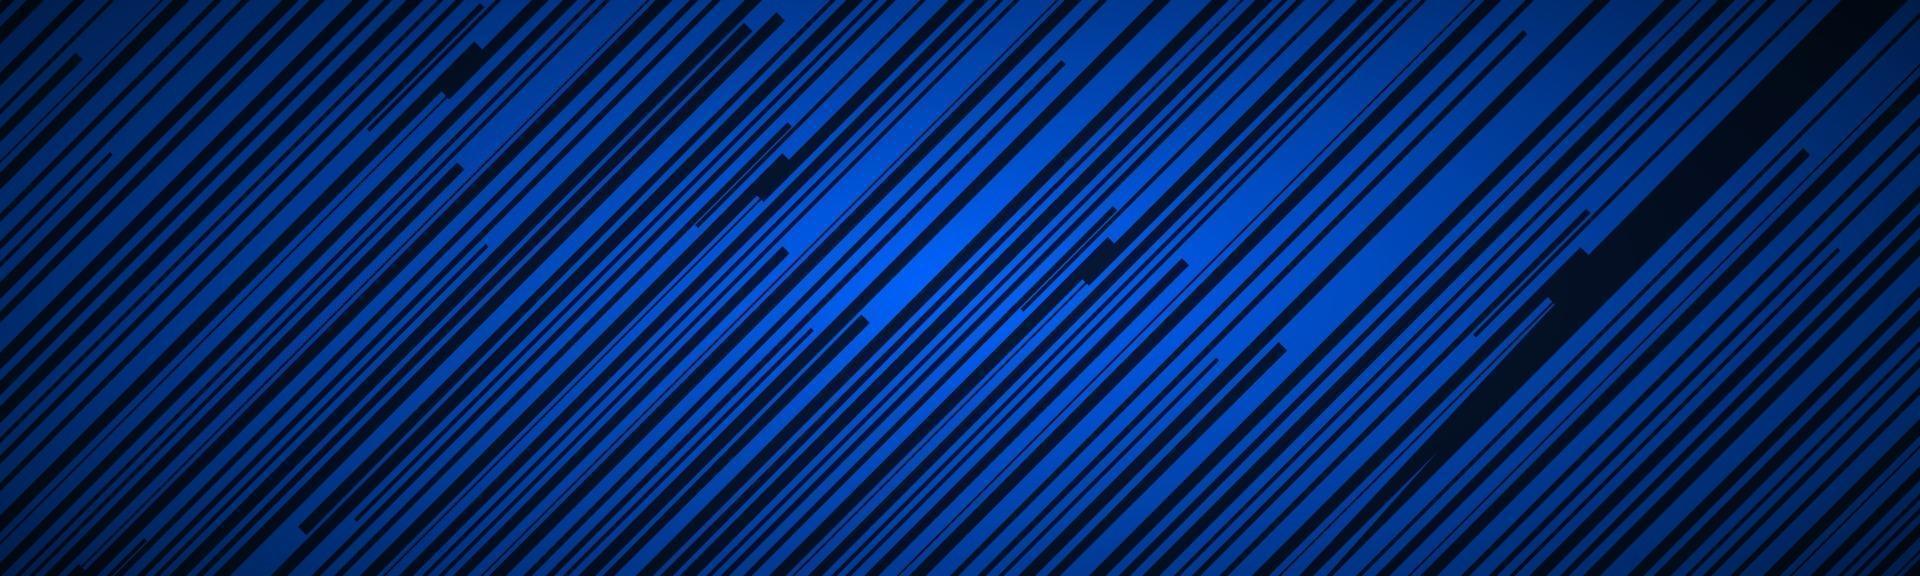 intestazione astratta scura con linee oblique blu e nere motivo a strisce linee parallele e strisce banner fibra diagonale illustrazione vettoriale